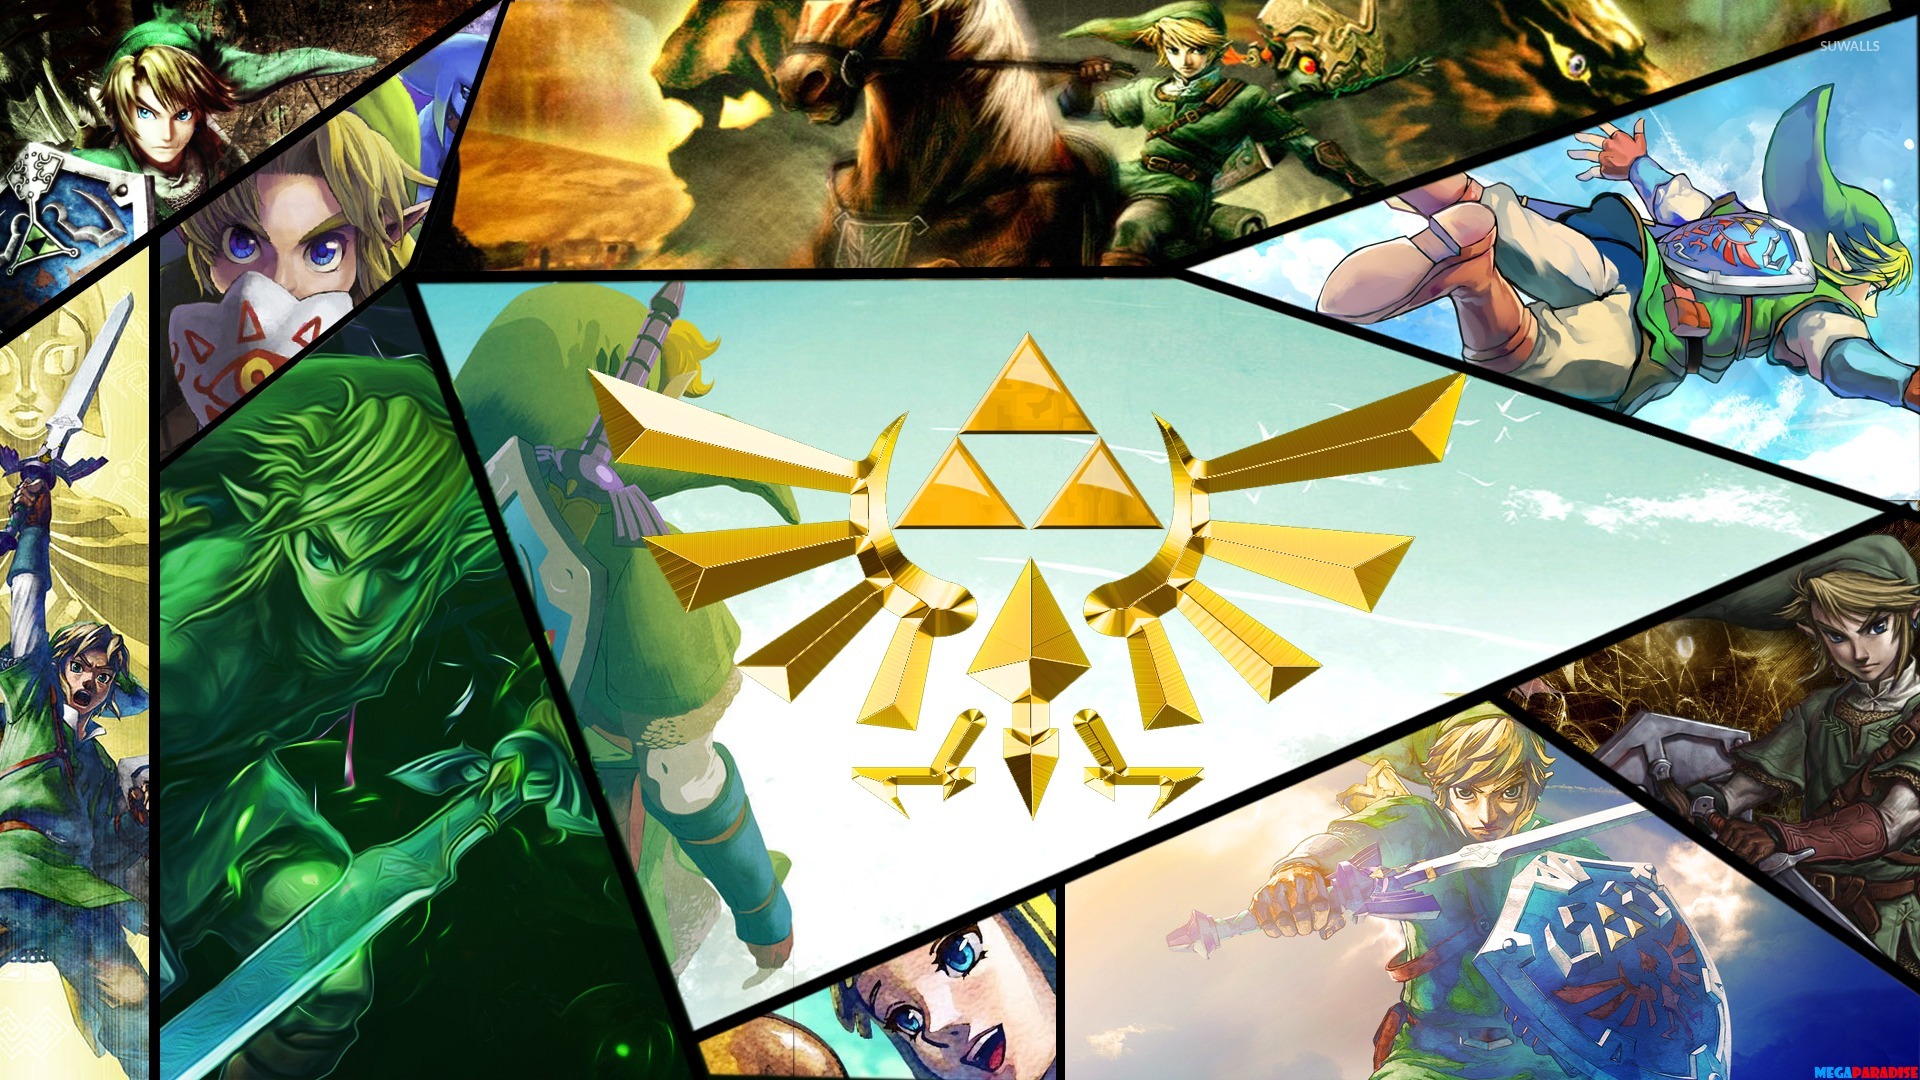 Legend of Zelda Link wallpaper, Link HD wallpaper